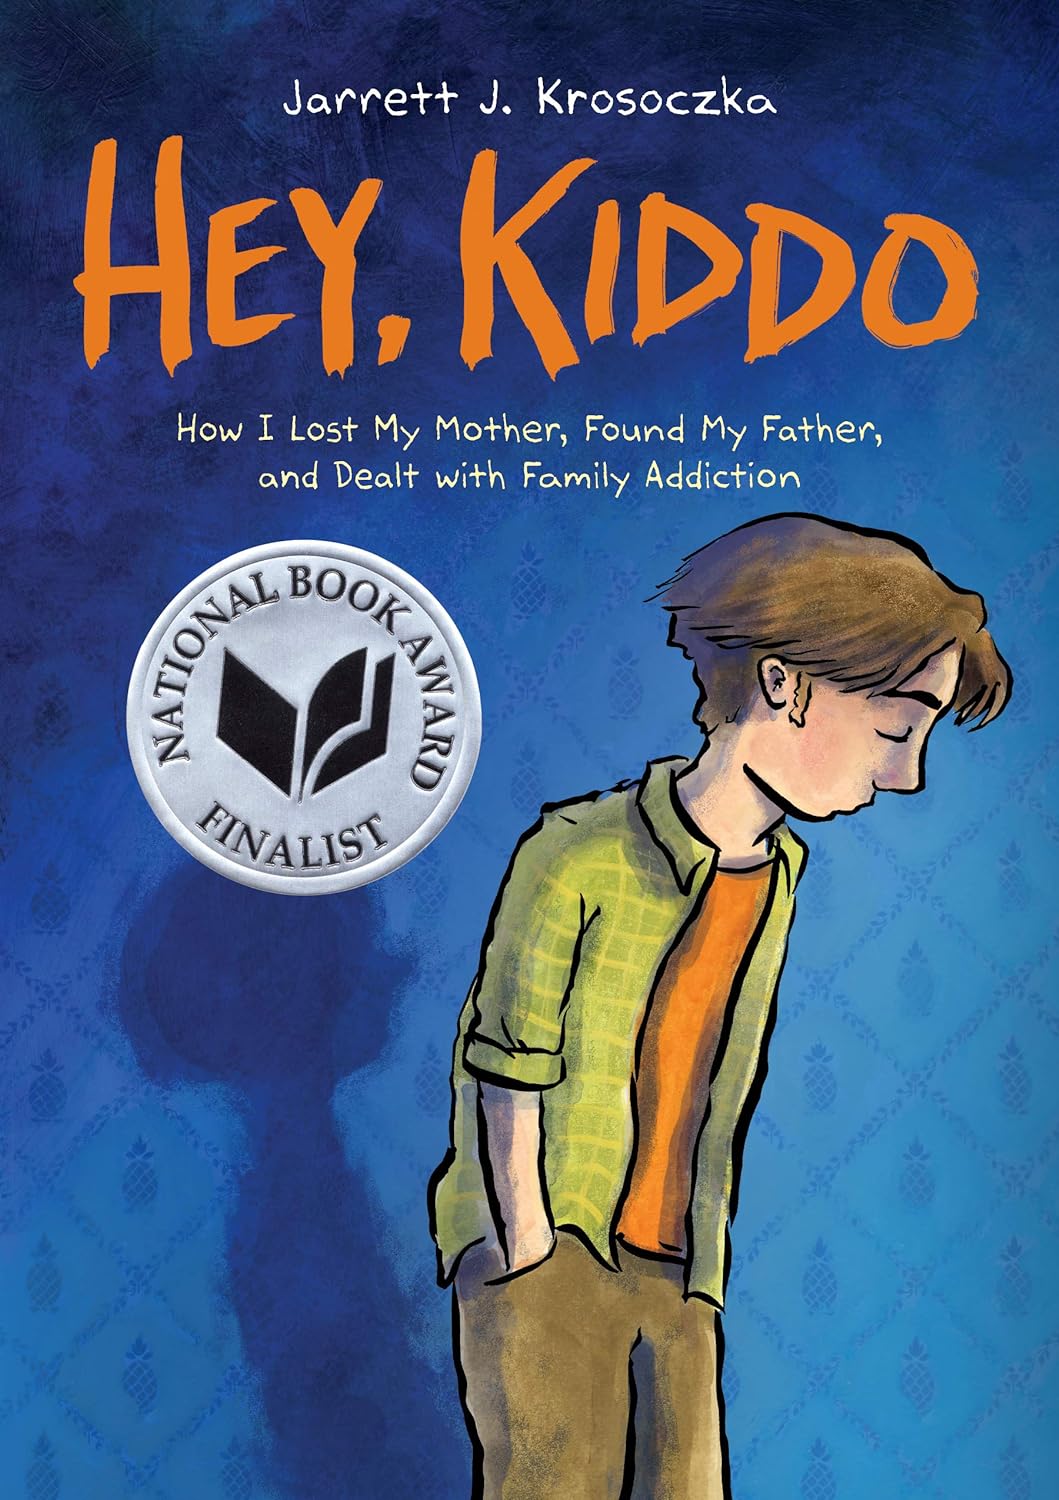 Hey, Kiddo! by Jarrett J. Krosoczka